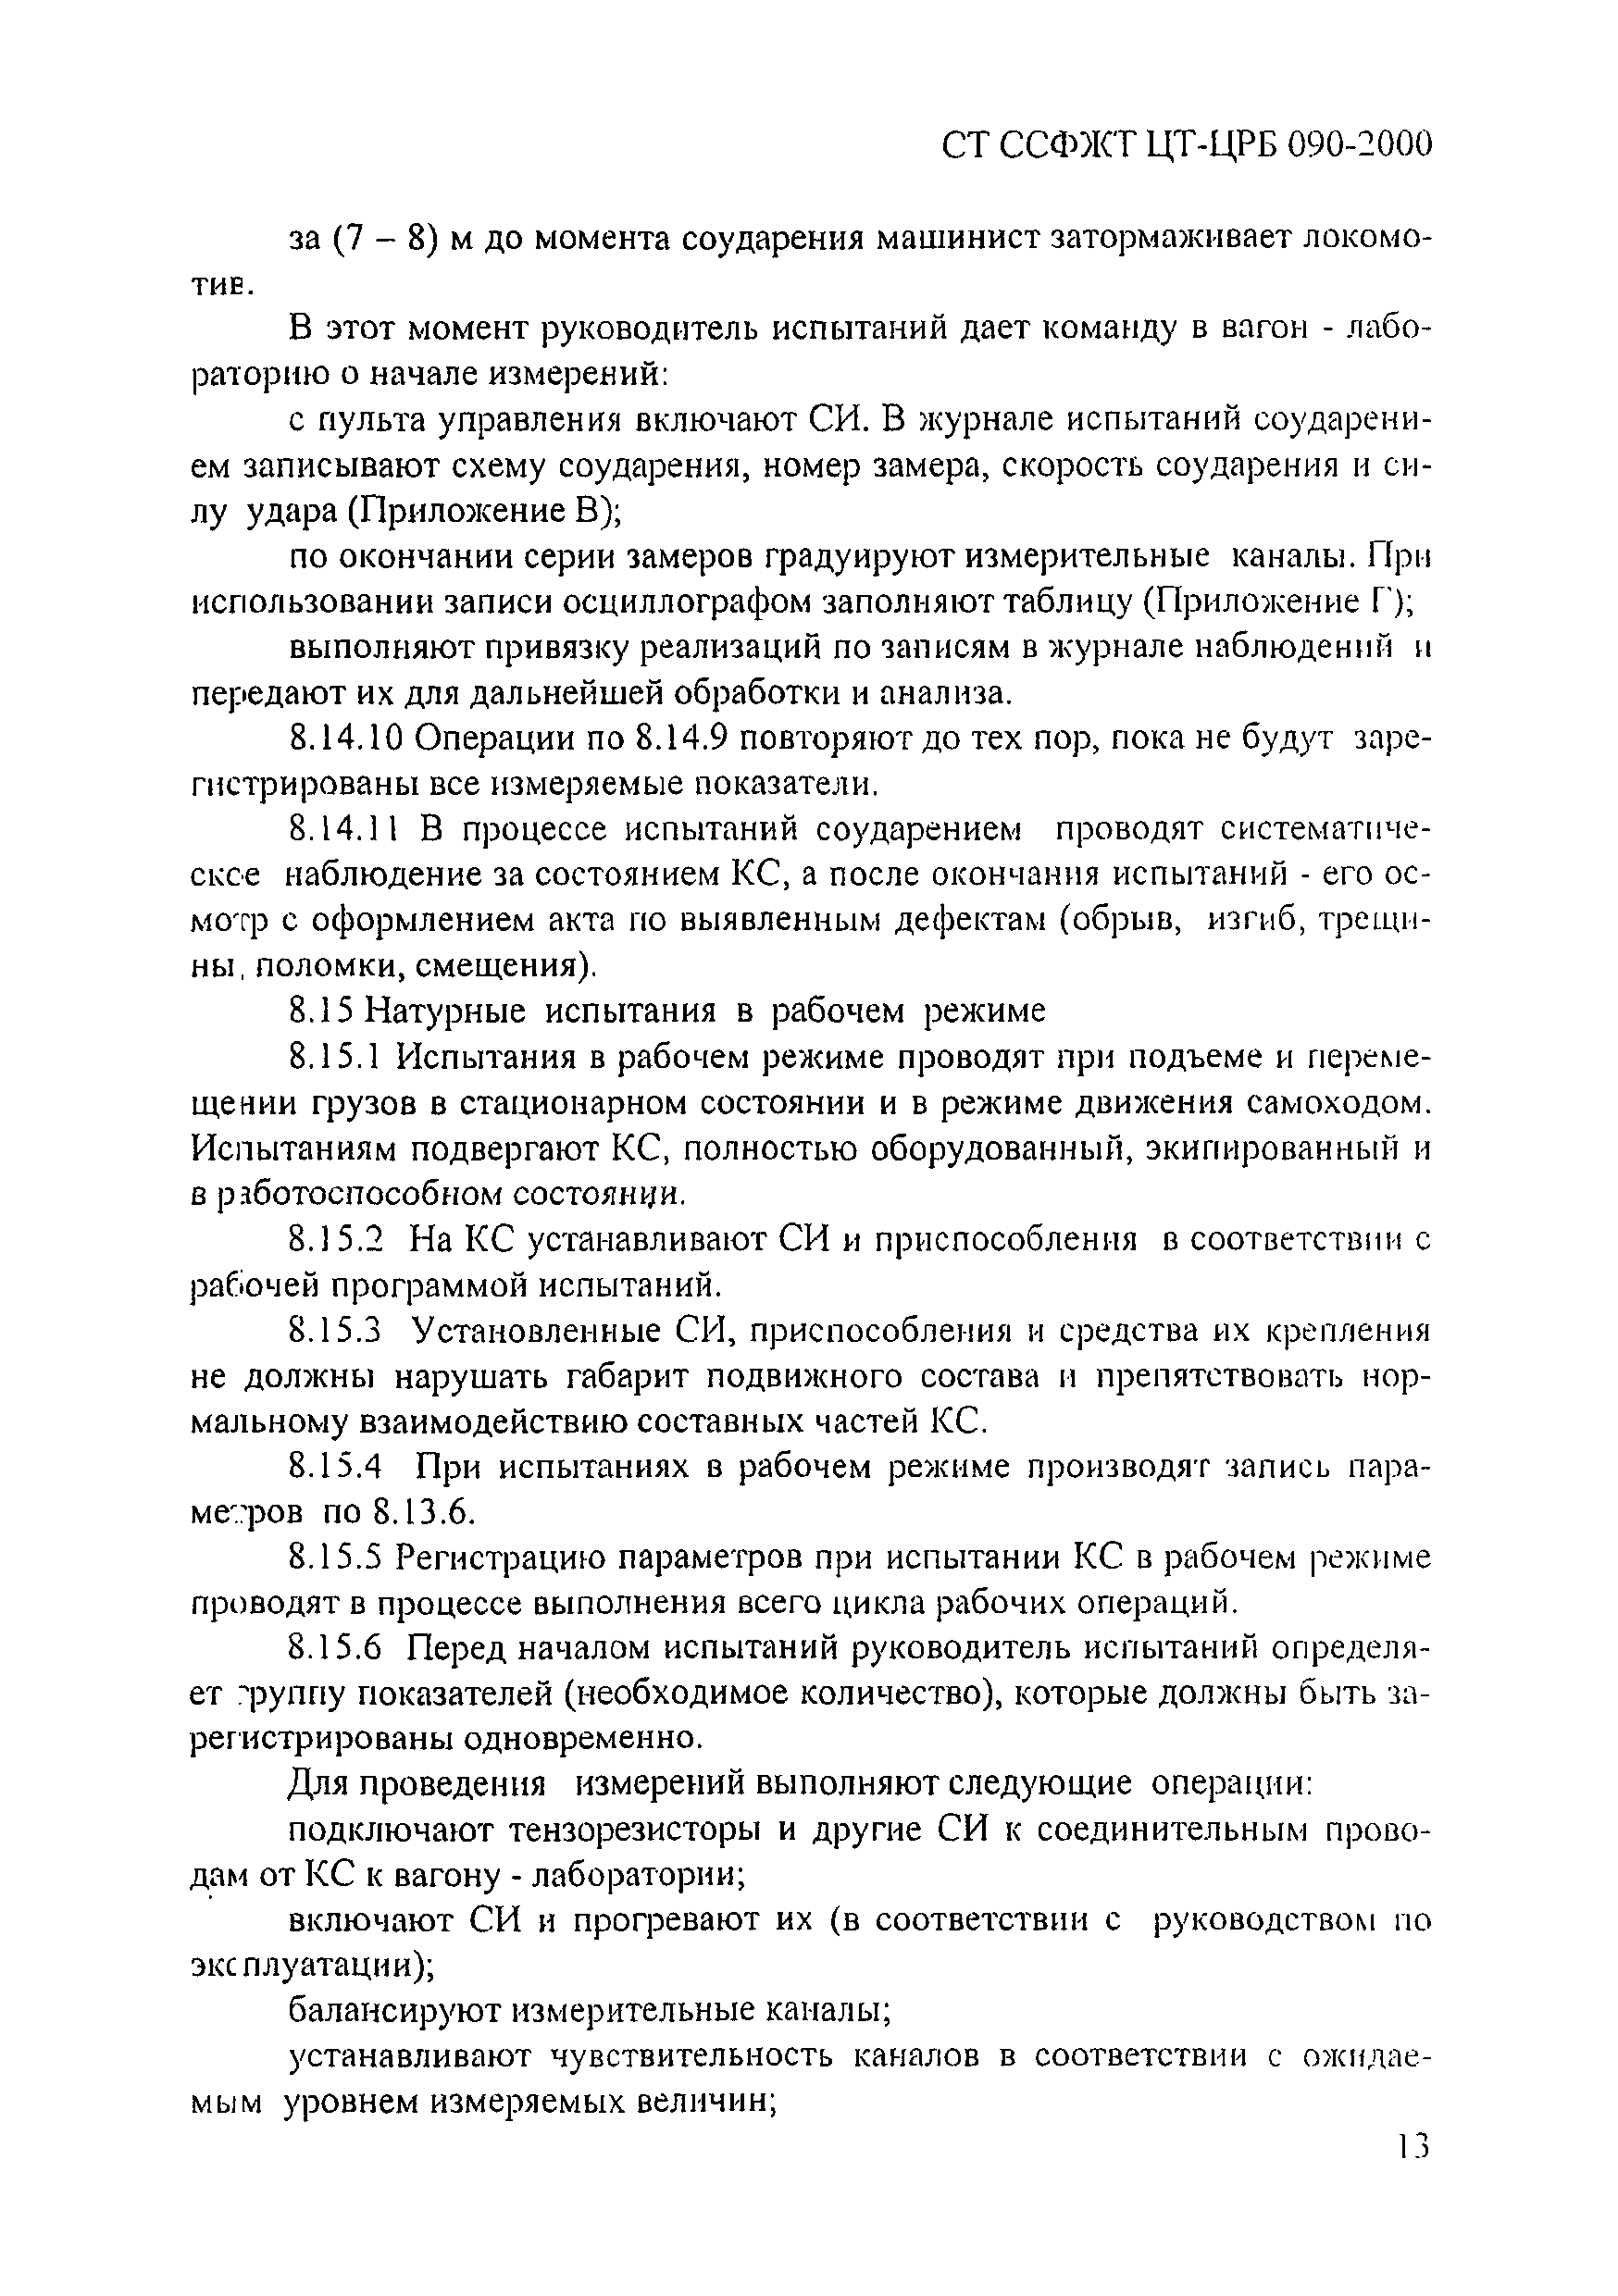 СТ ССФЖТ ЦТ-РБ 090-2000